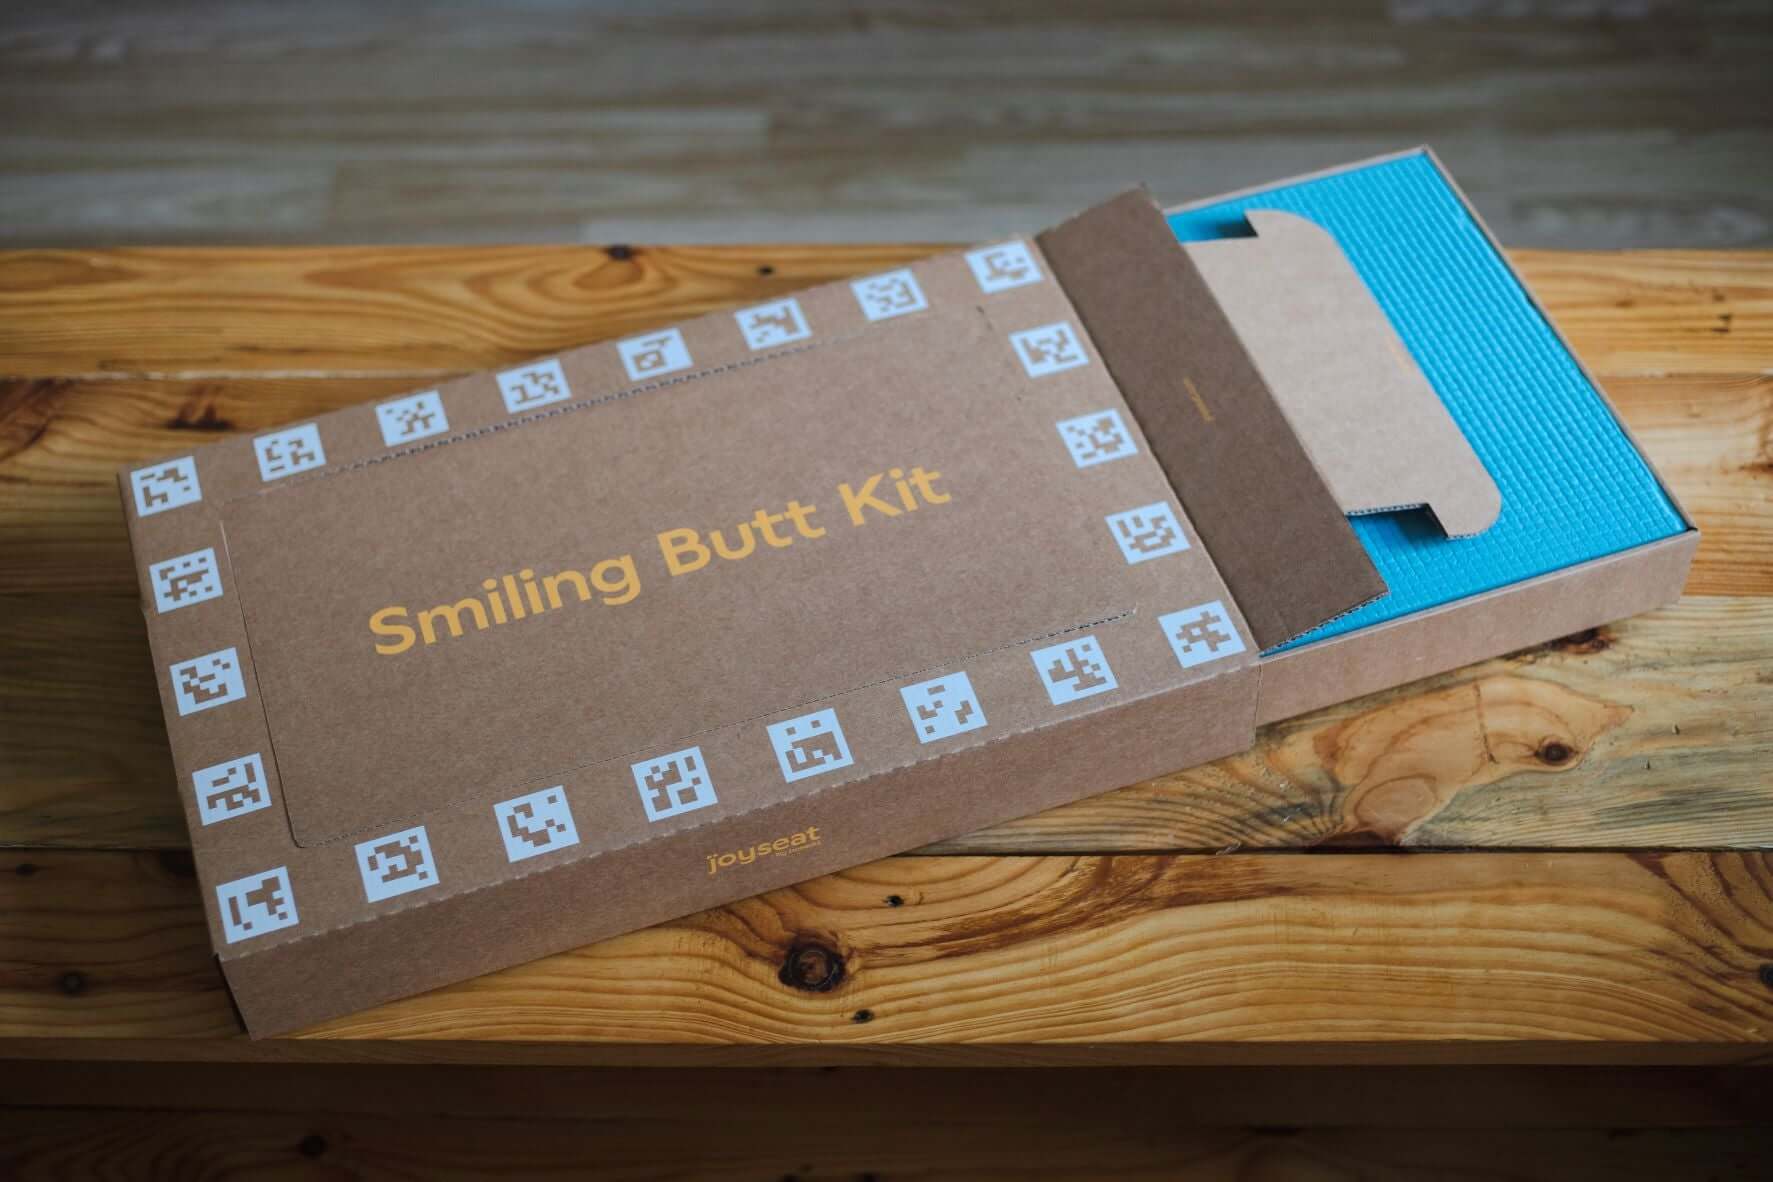 Návod na použití otiskové sady Smiling Butt Kit